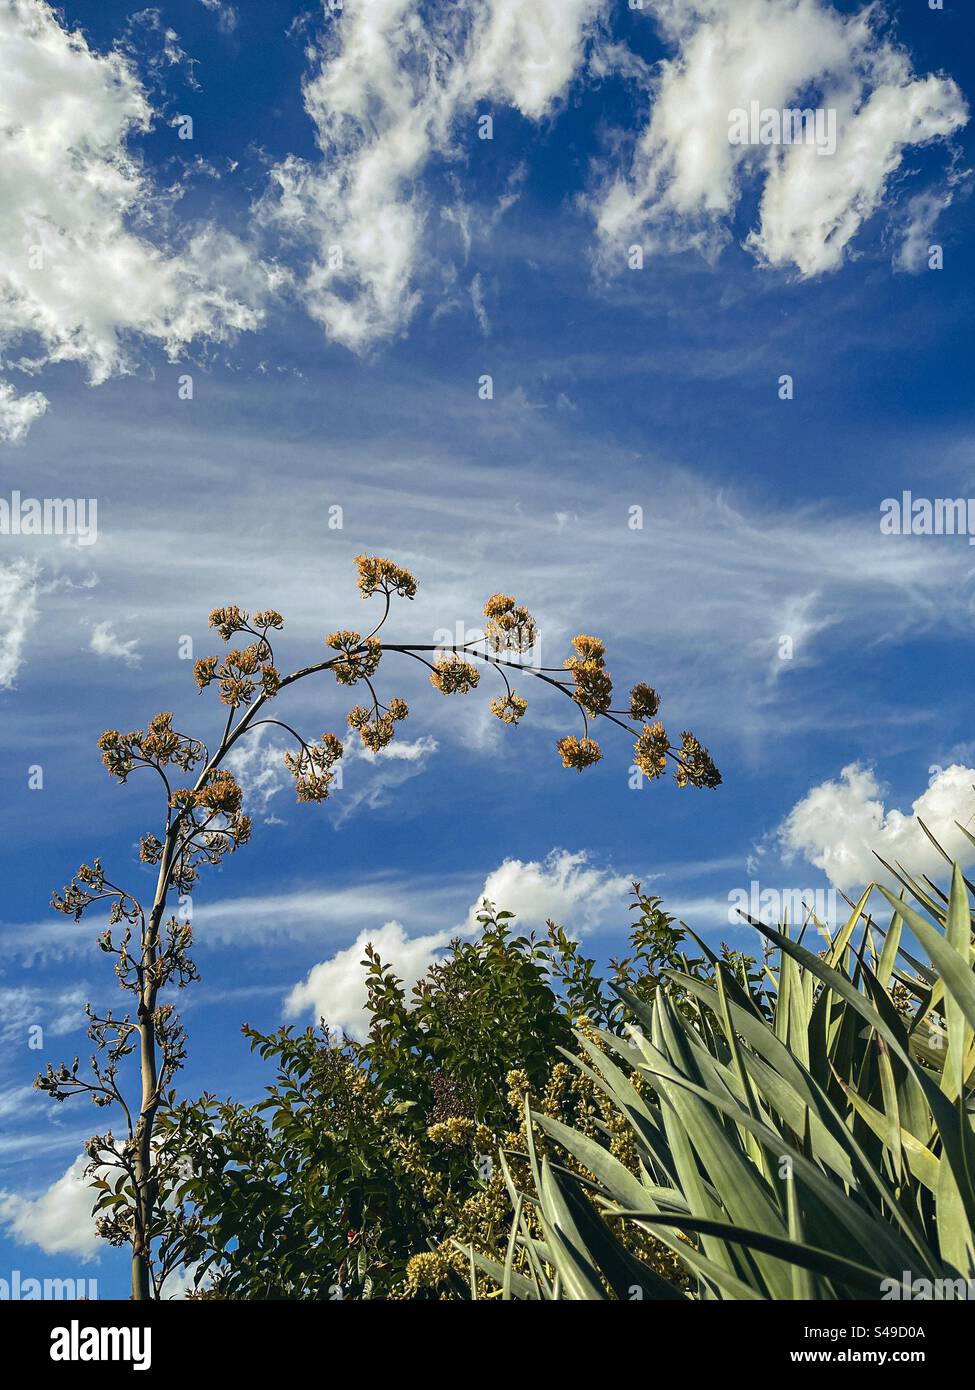 Vue panoramique de la tige de la plante agave en fleurs et des arbustes Dracaena contre les nuages de cirrus dans le ciel bleu. Nature pittoresque. Beauté dans la nature. Banque D'Images